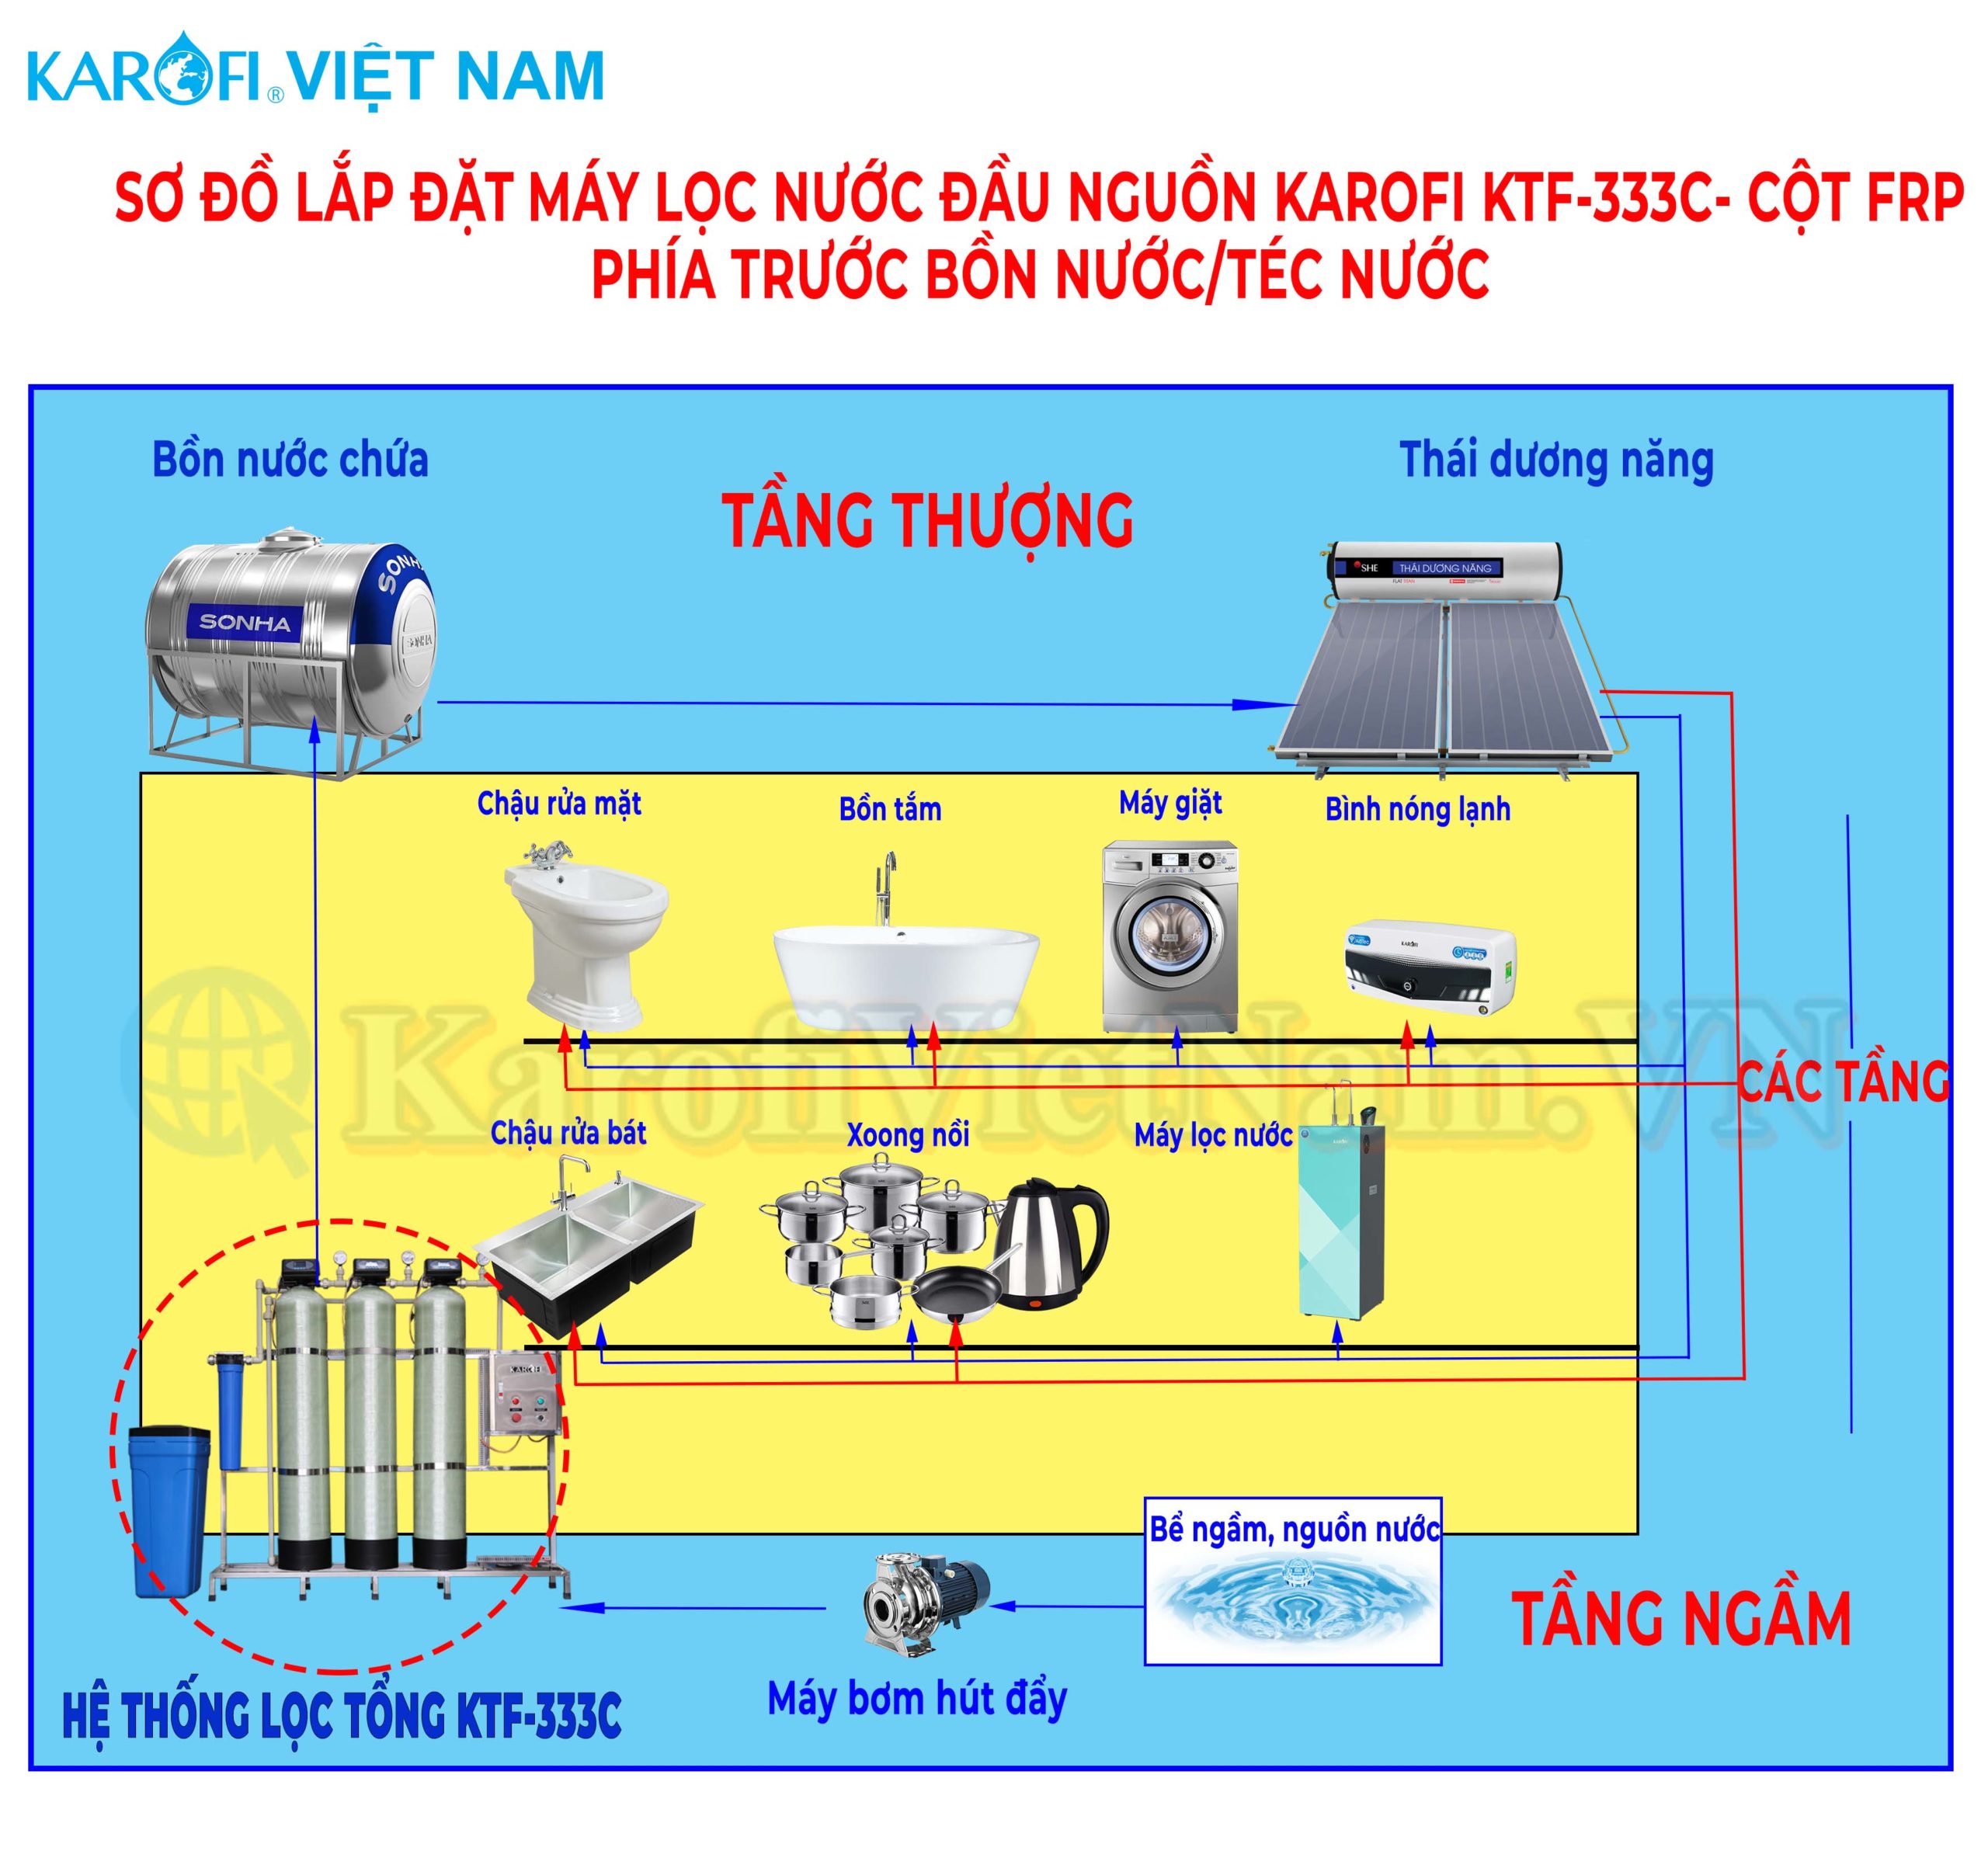 Sơ đồ lắp đặt Máy lọc nước đầu nguồn Karofi KTF-333C - Cột FRP phía trước bồn nước